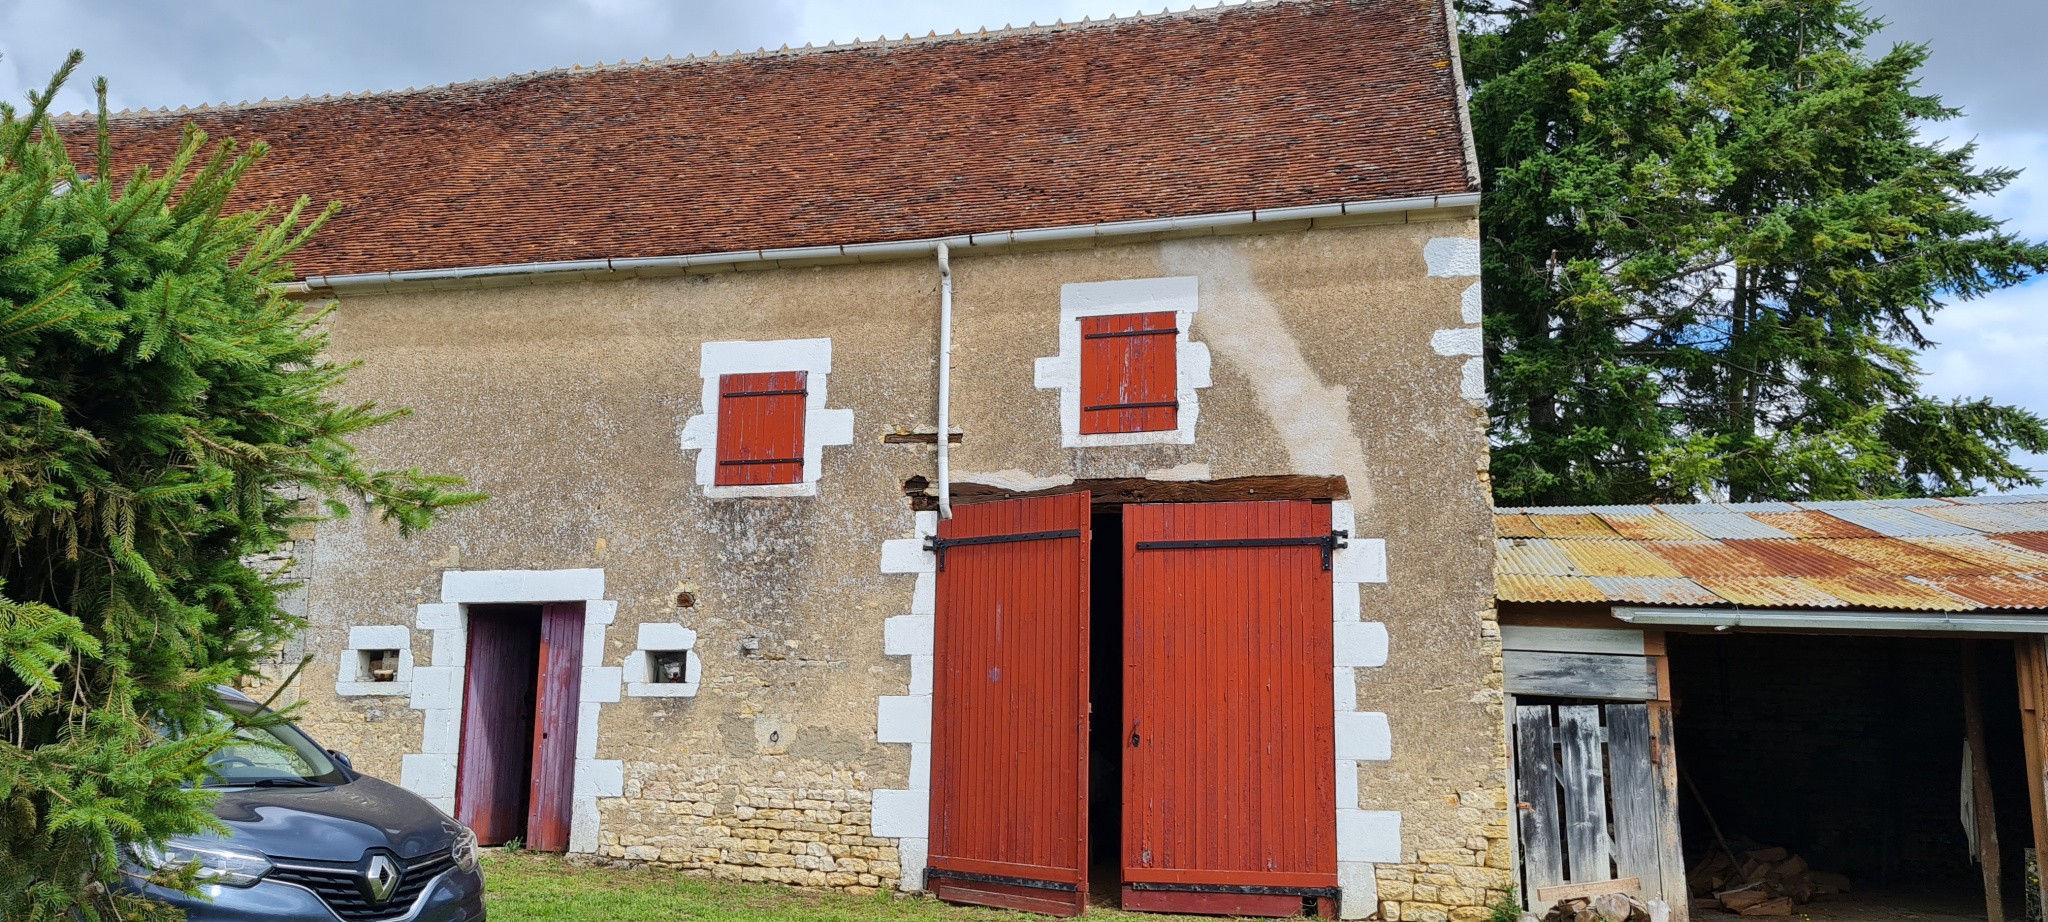 Vente Maison à Cuncy-lès-Varzy 4 pièces